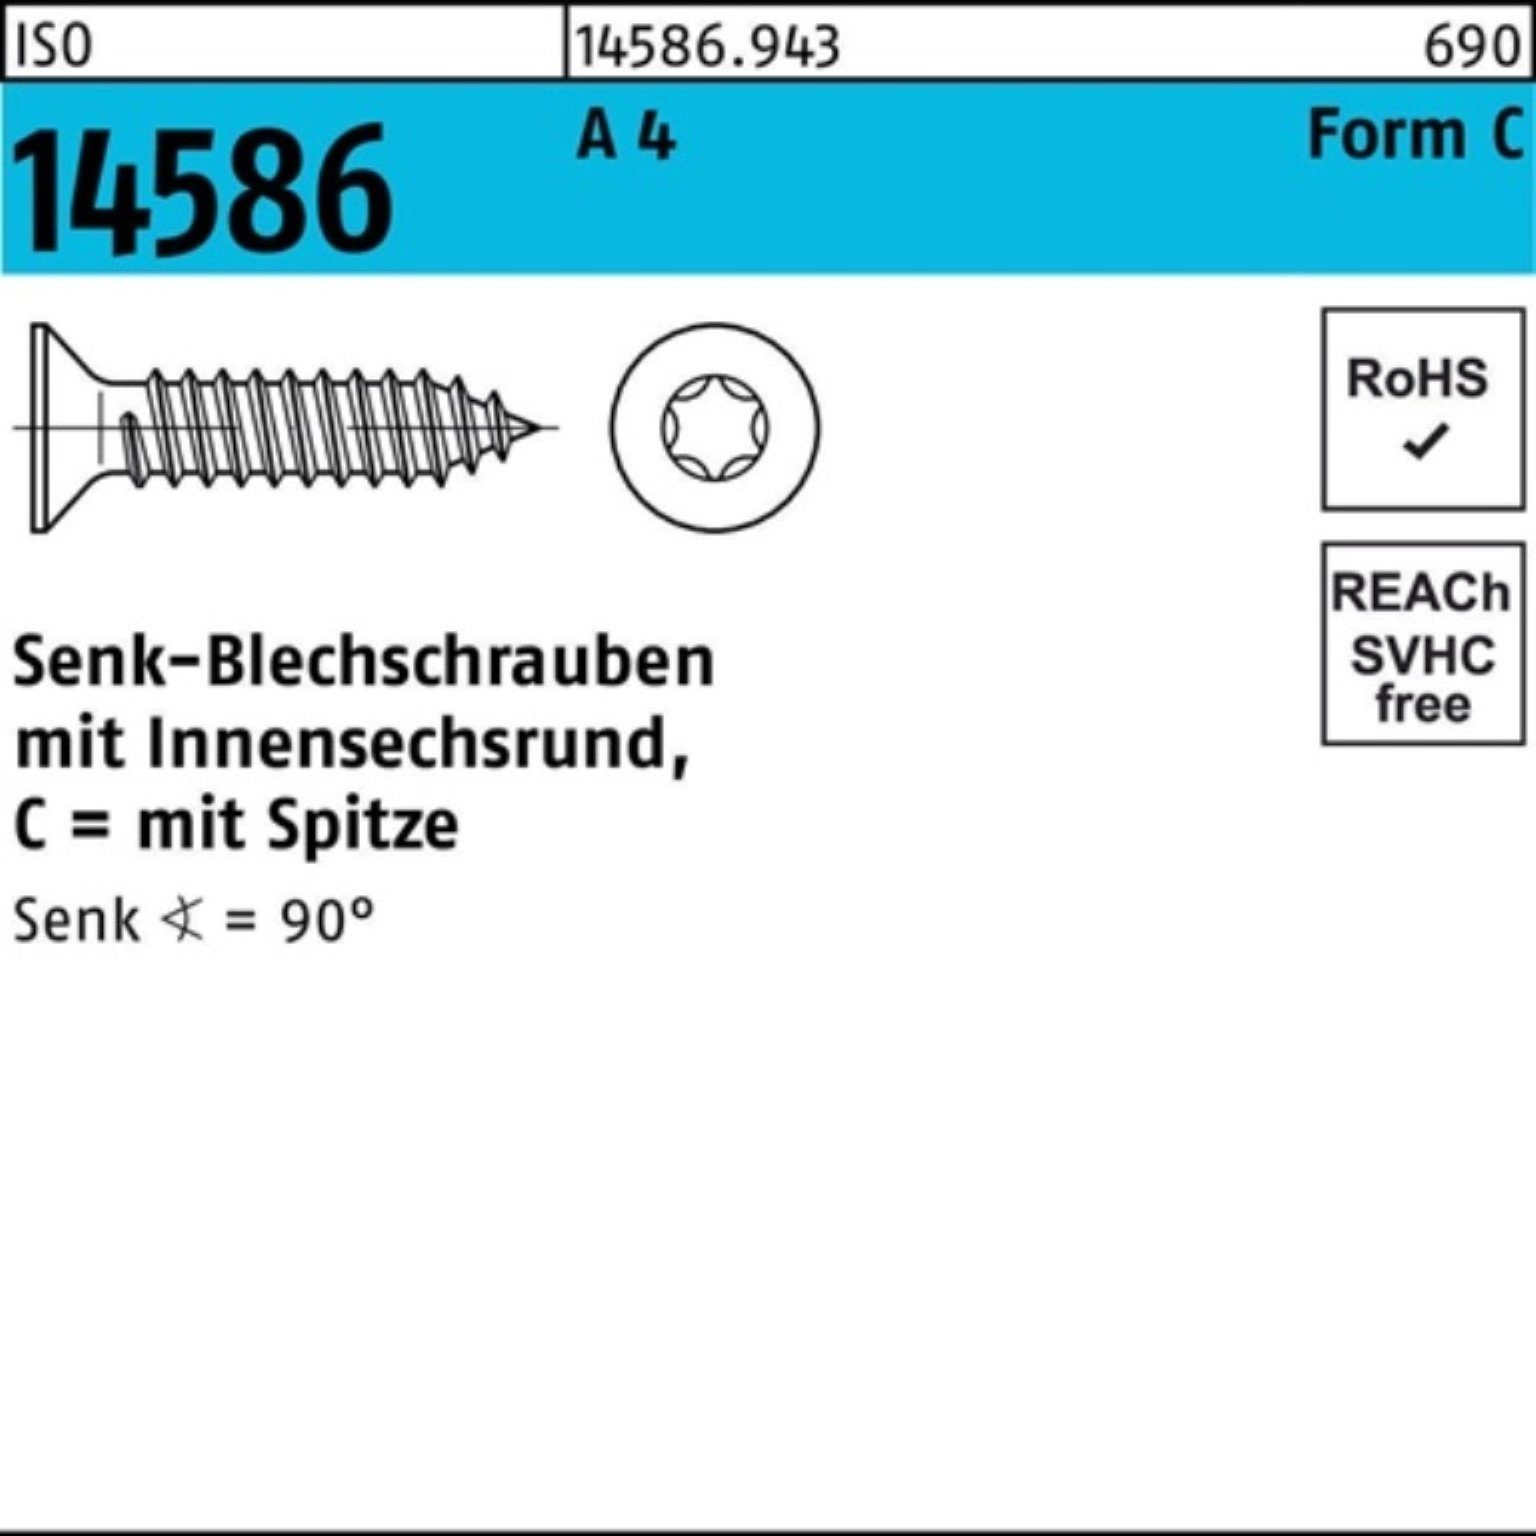 Reyher Schraube 1000er Pack Senkblechschraube 100 ISO 3,9x 14586 4 A 13-T15 ISR/Spitze